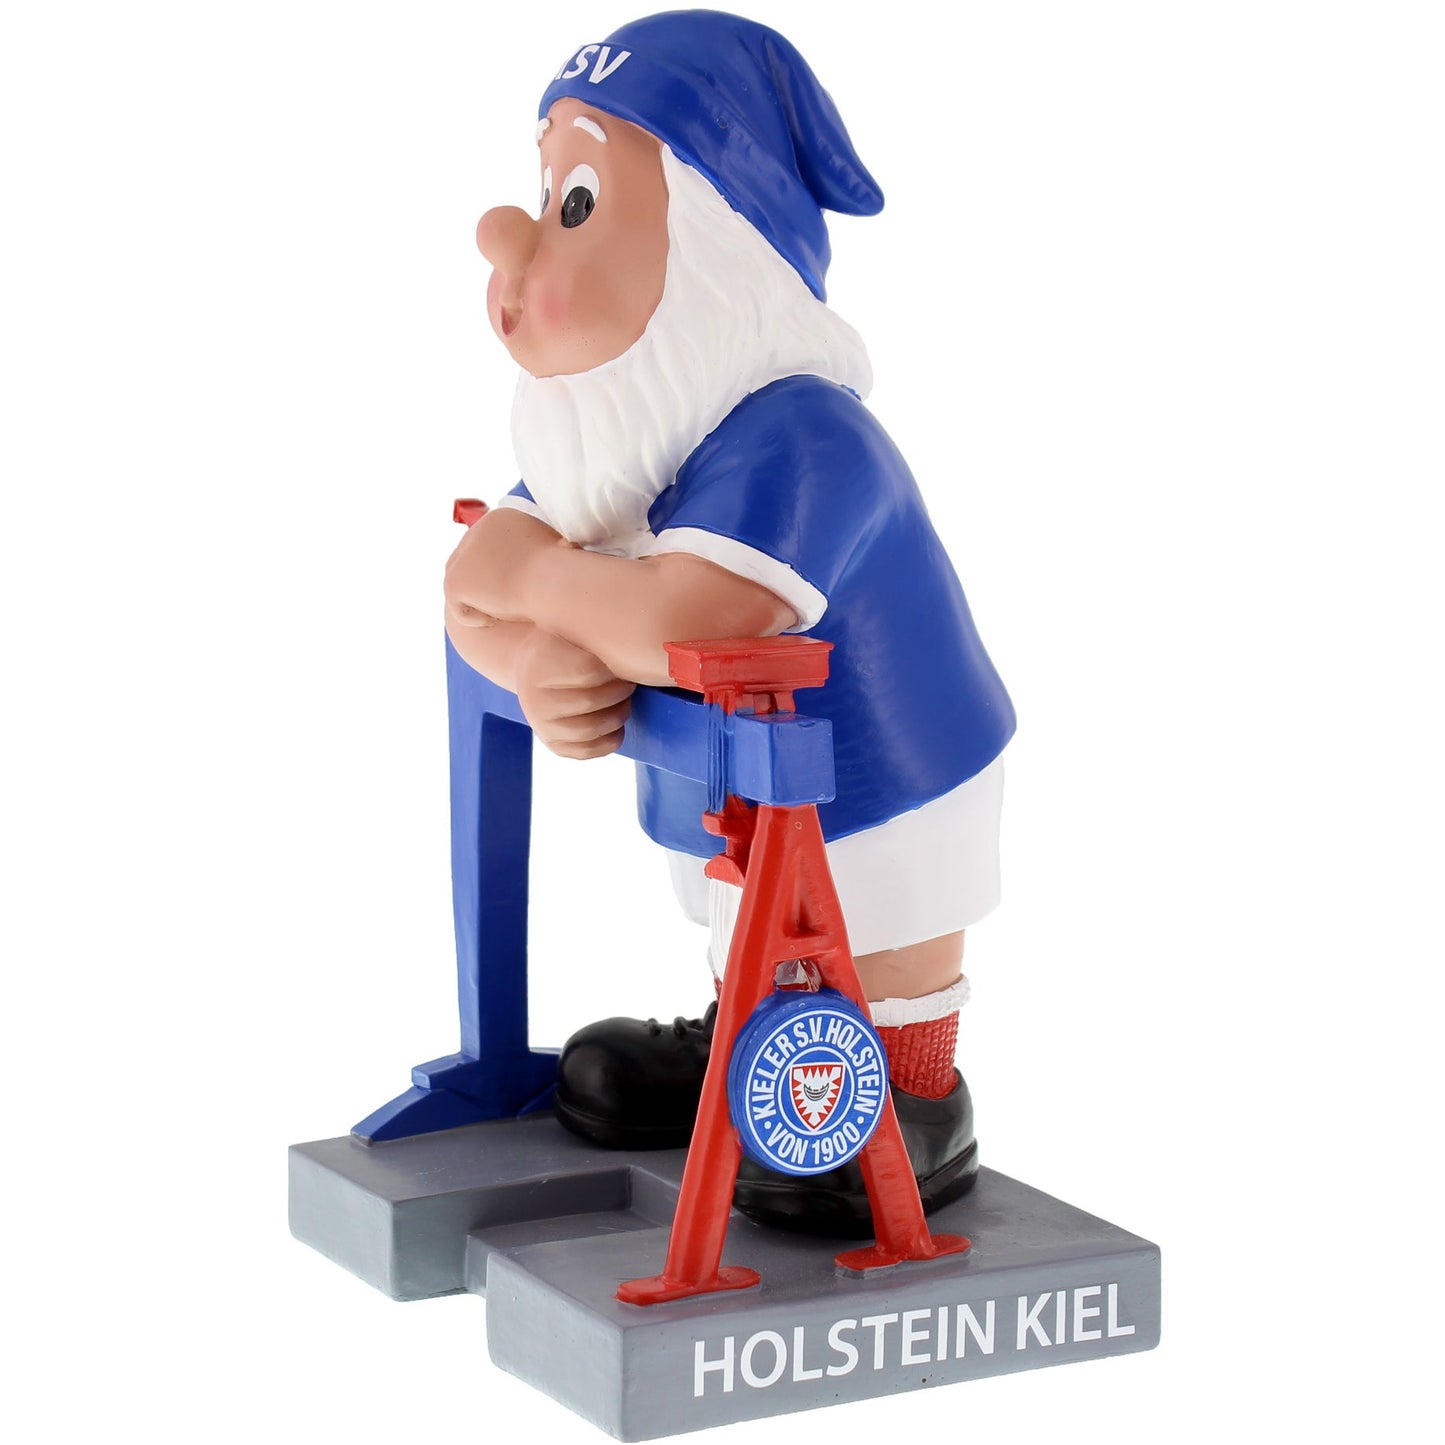 Holstein Kiel Gartenzwerg Kran